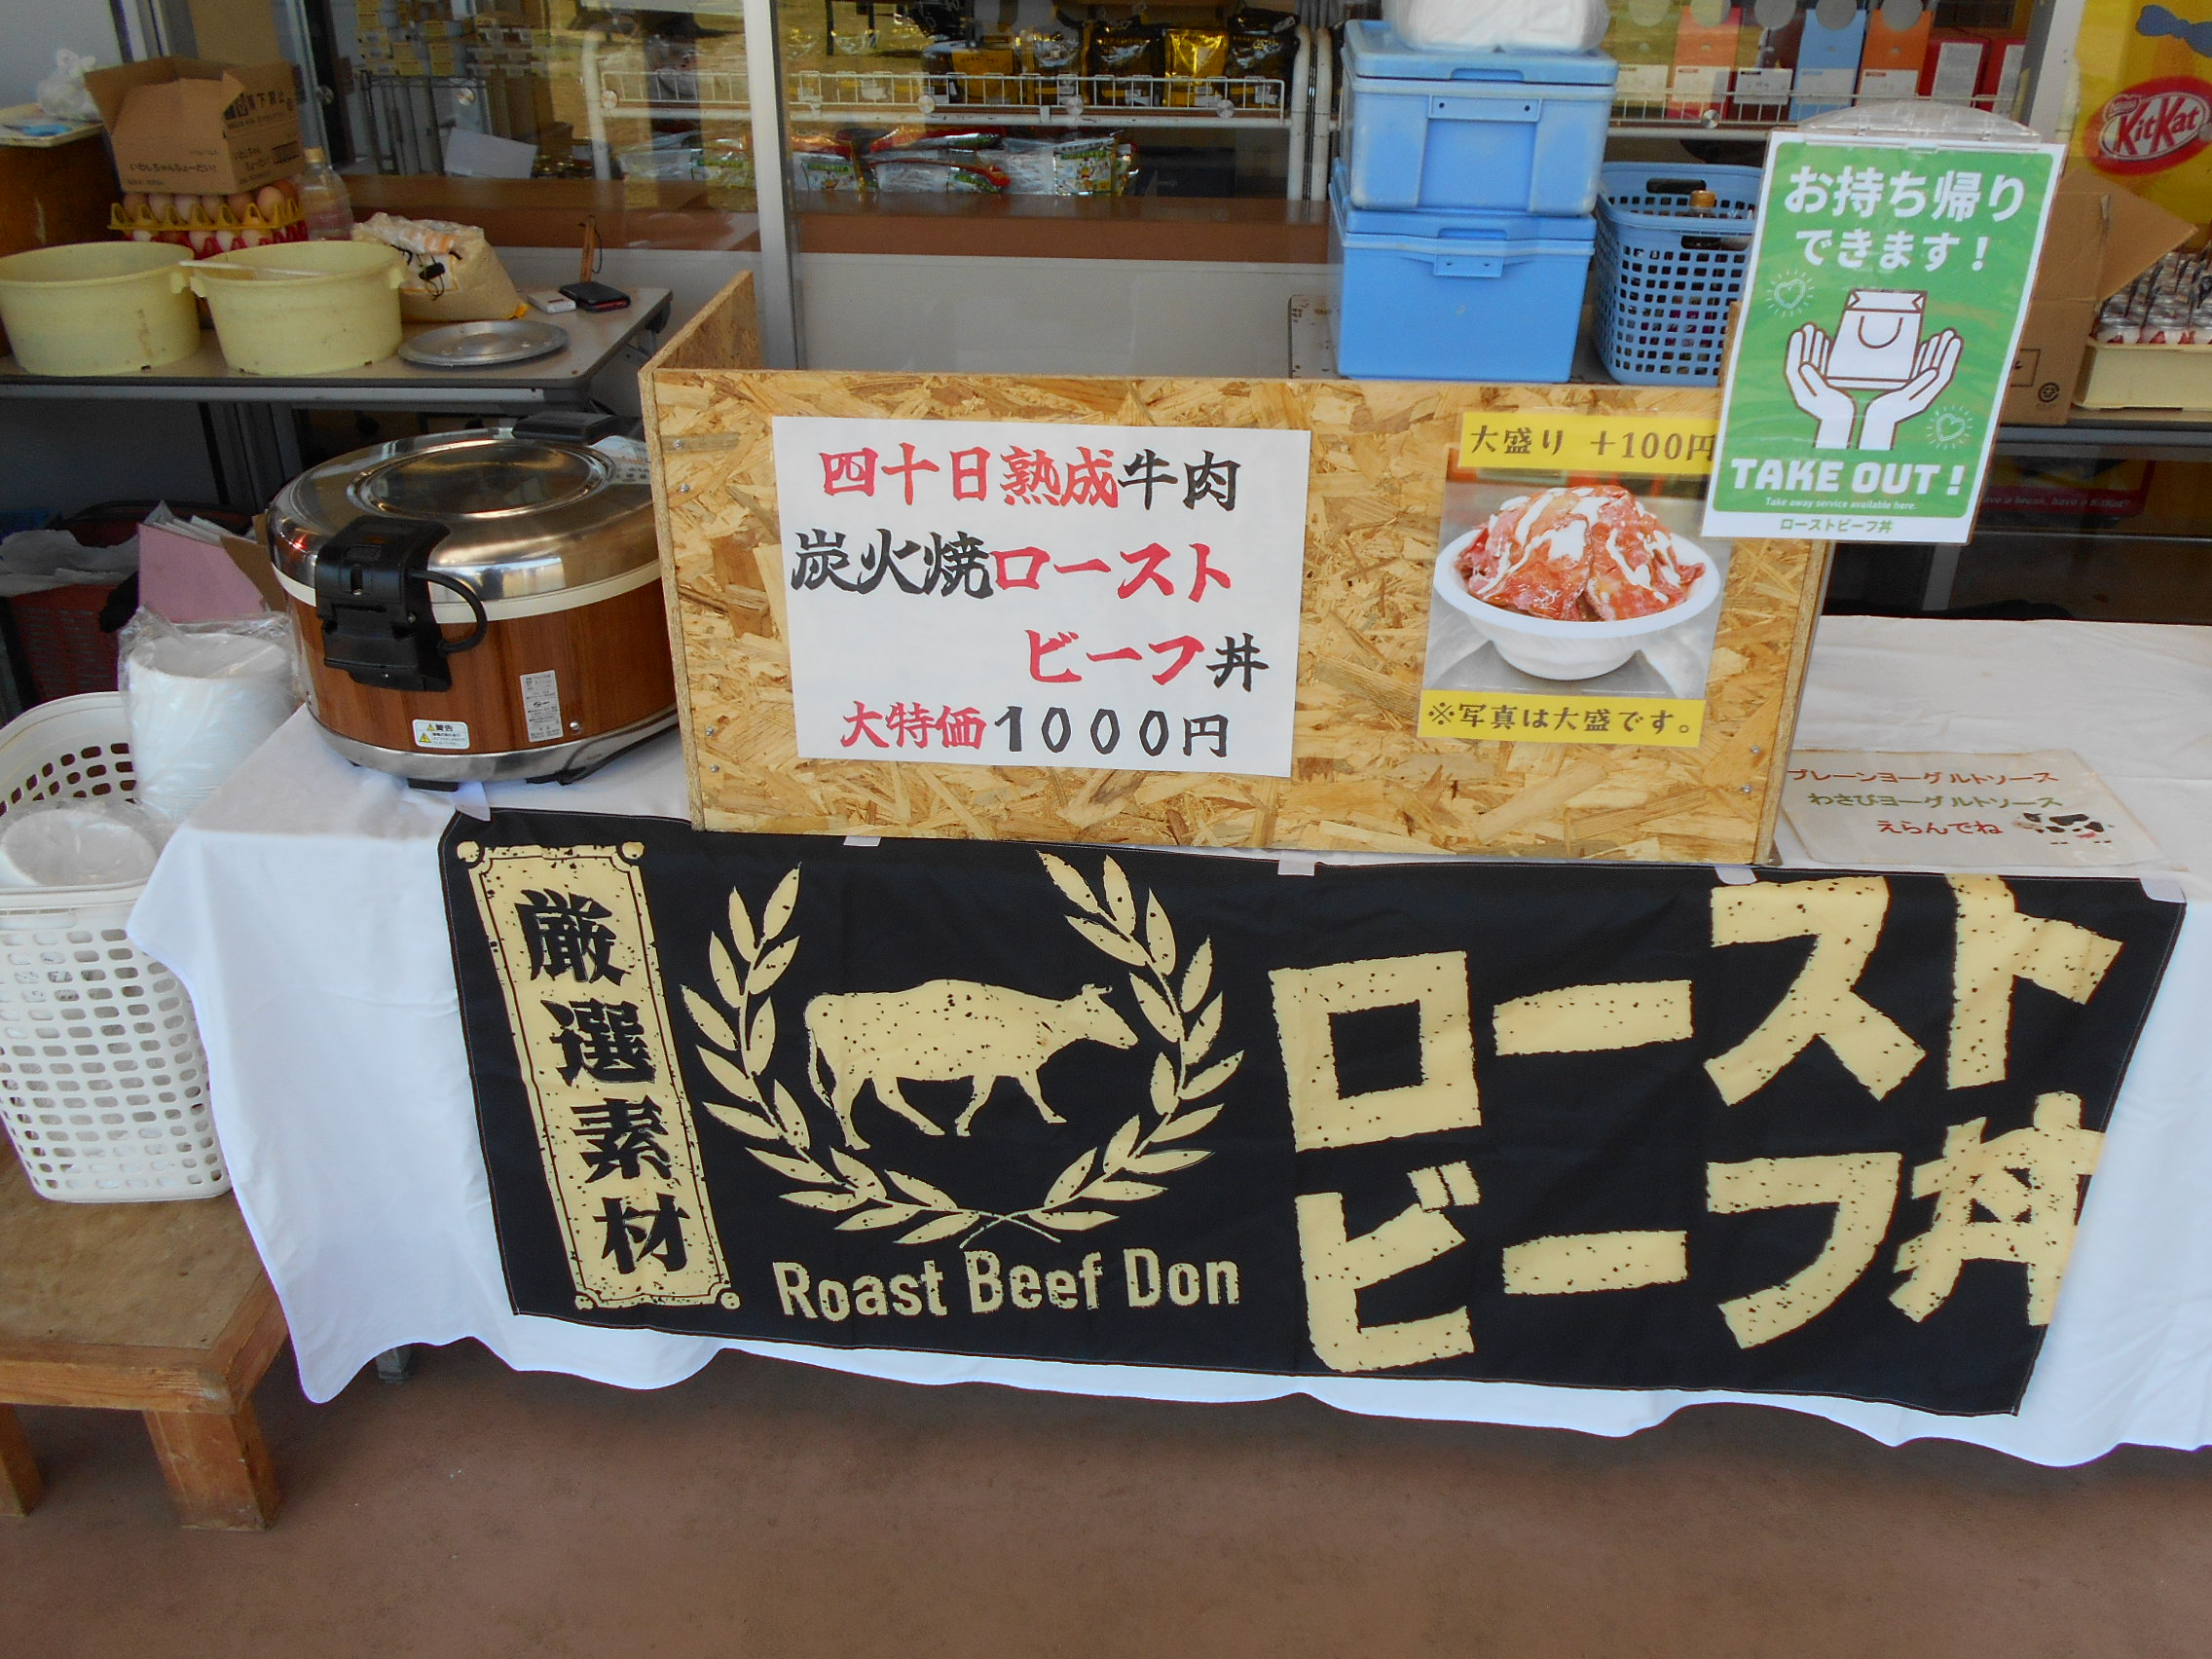 ローストビーフ丼の特別販売